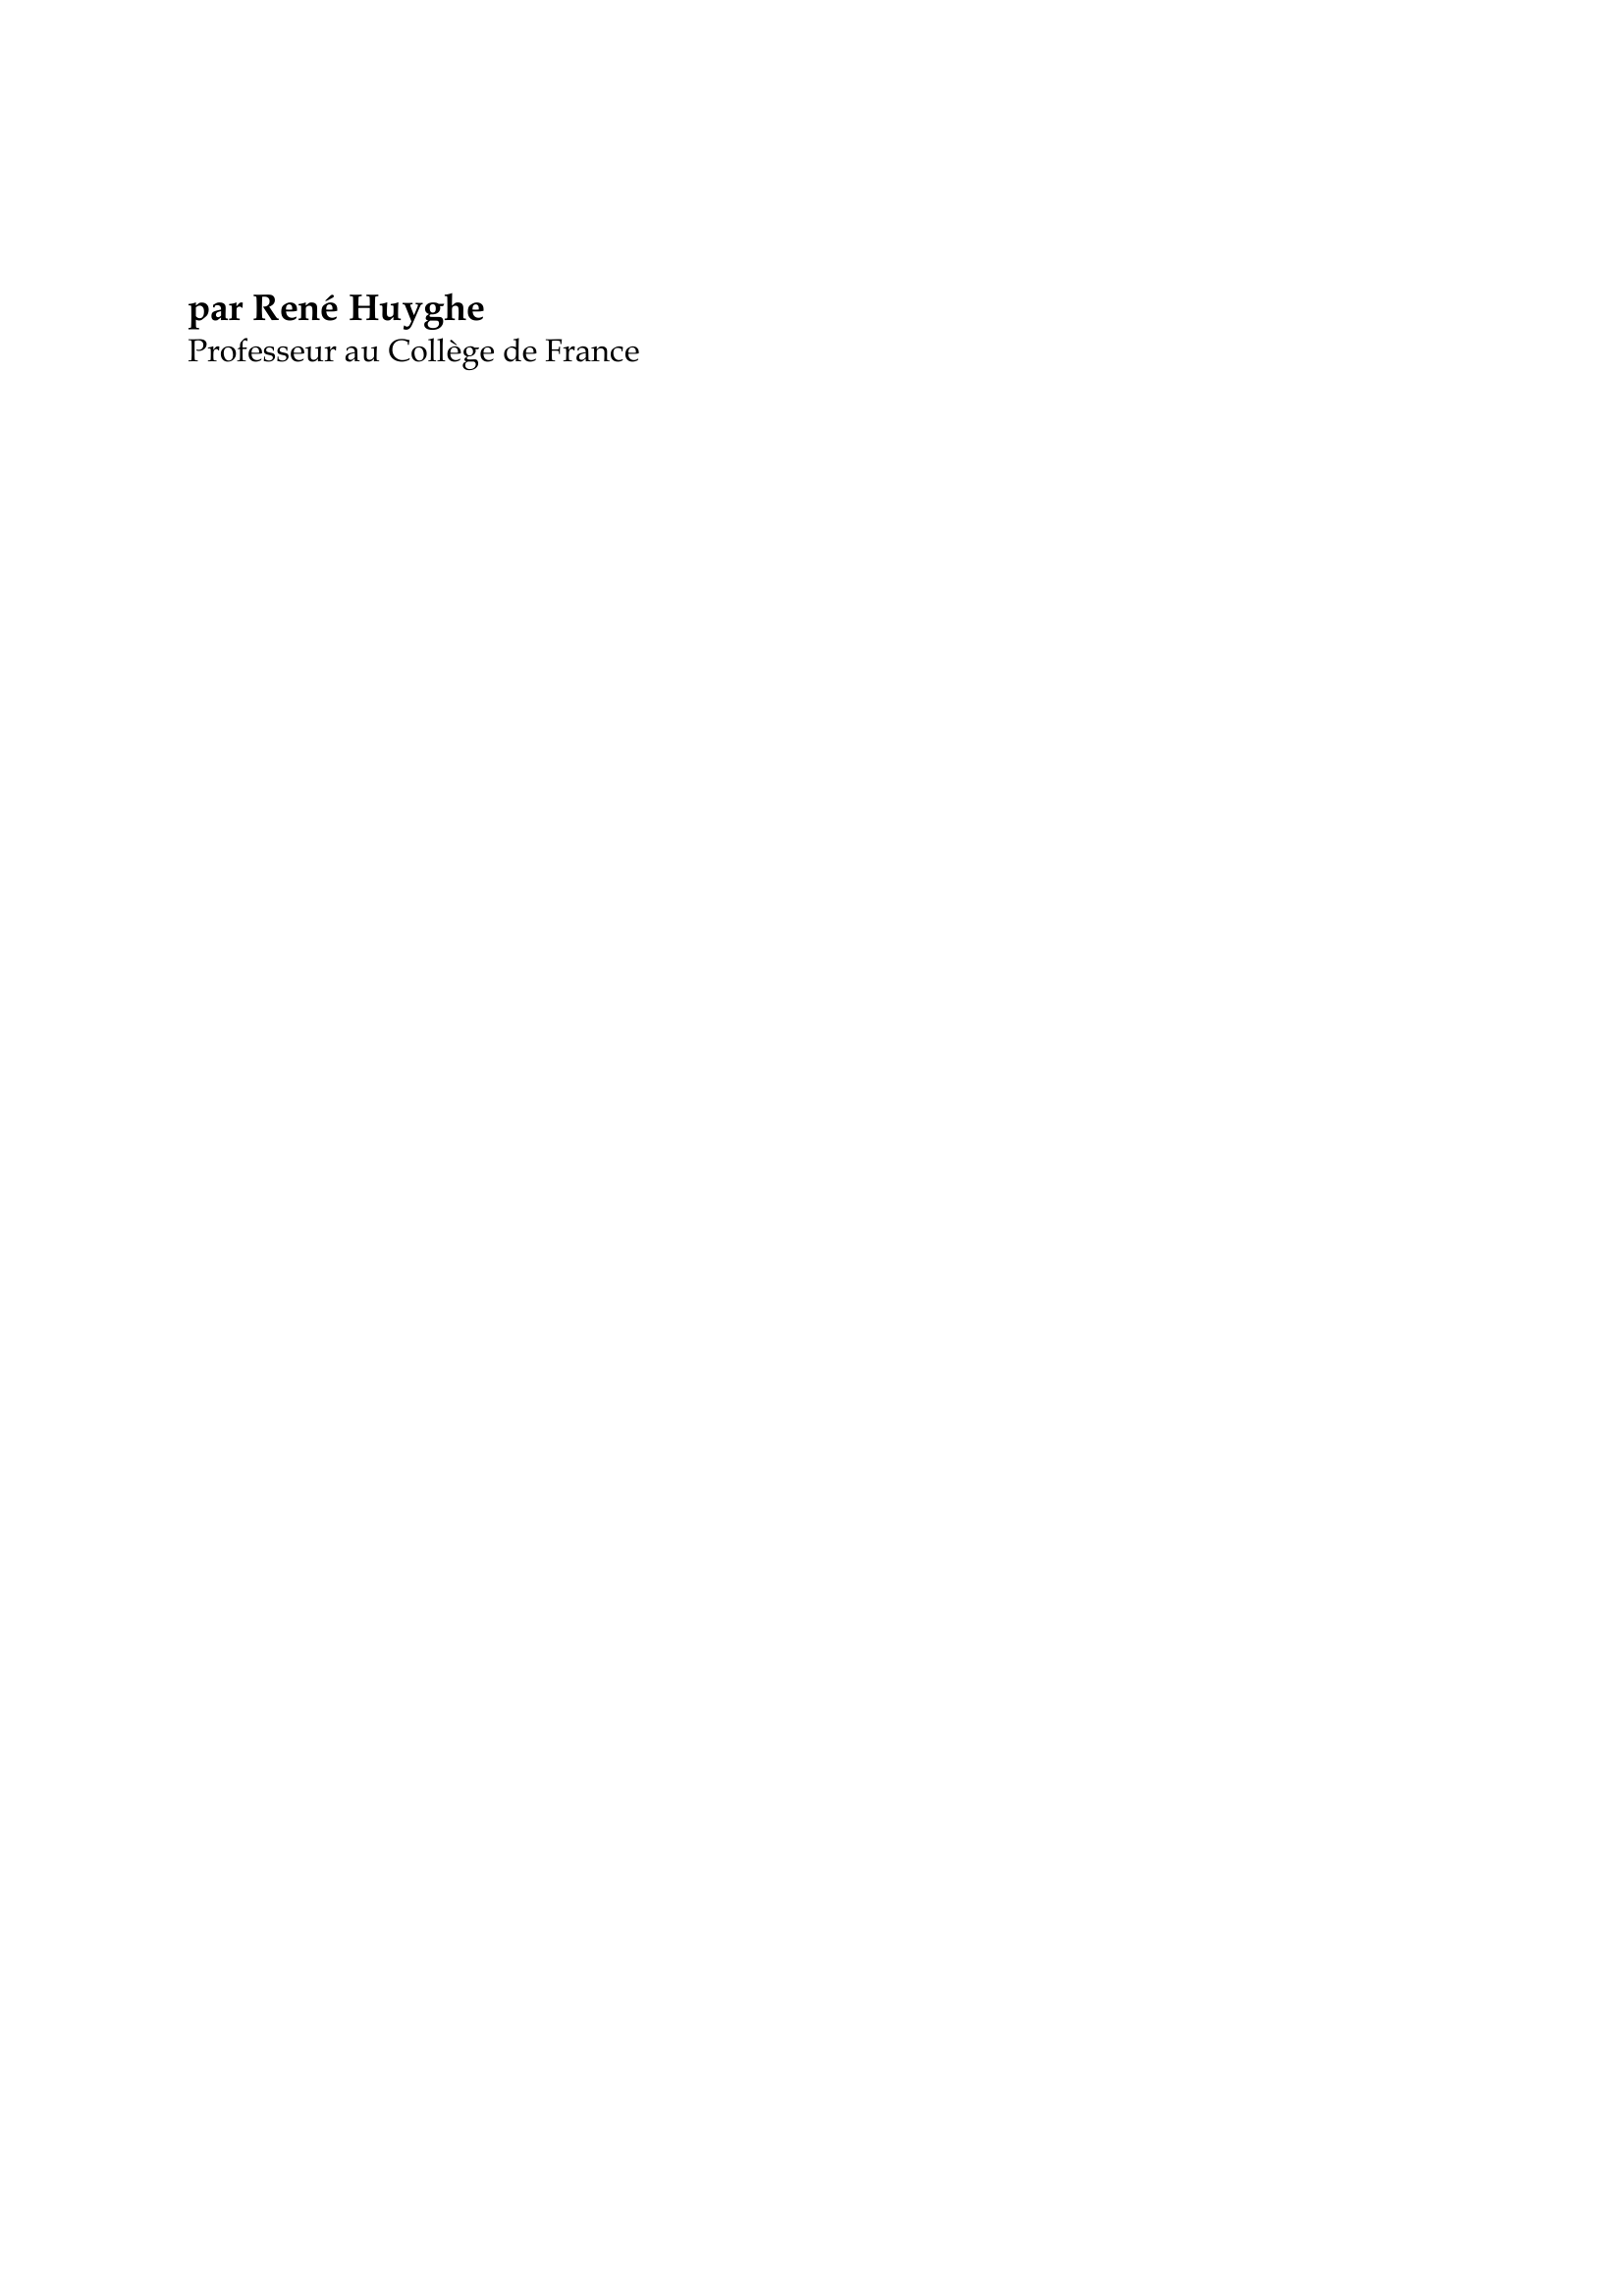 Prévisualisation du document Jean Auguste Dominique Ingres

par René Huyghe
Professeur au Collège de France

Si Delacroix passe pour le chef du romantisme français au XIXe siècle,
Ingres est considéré comme celui du classicisme.